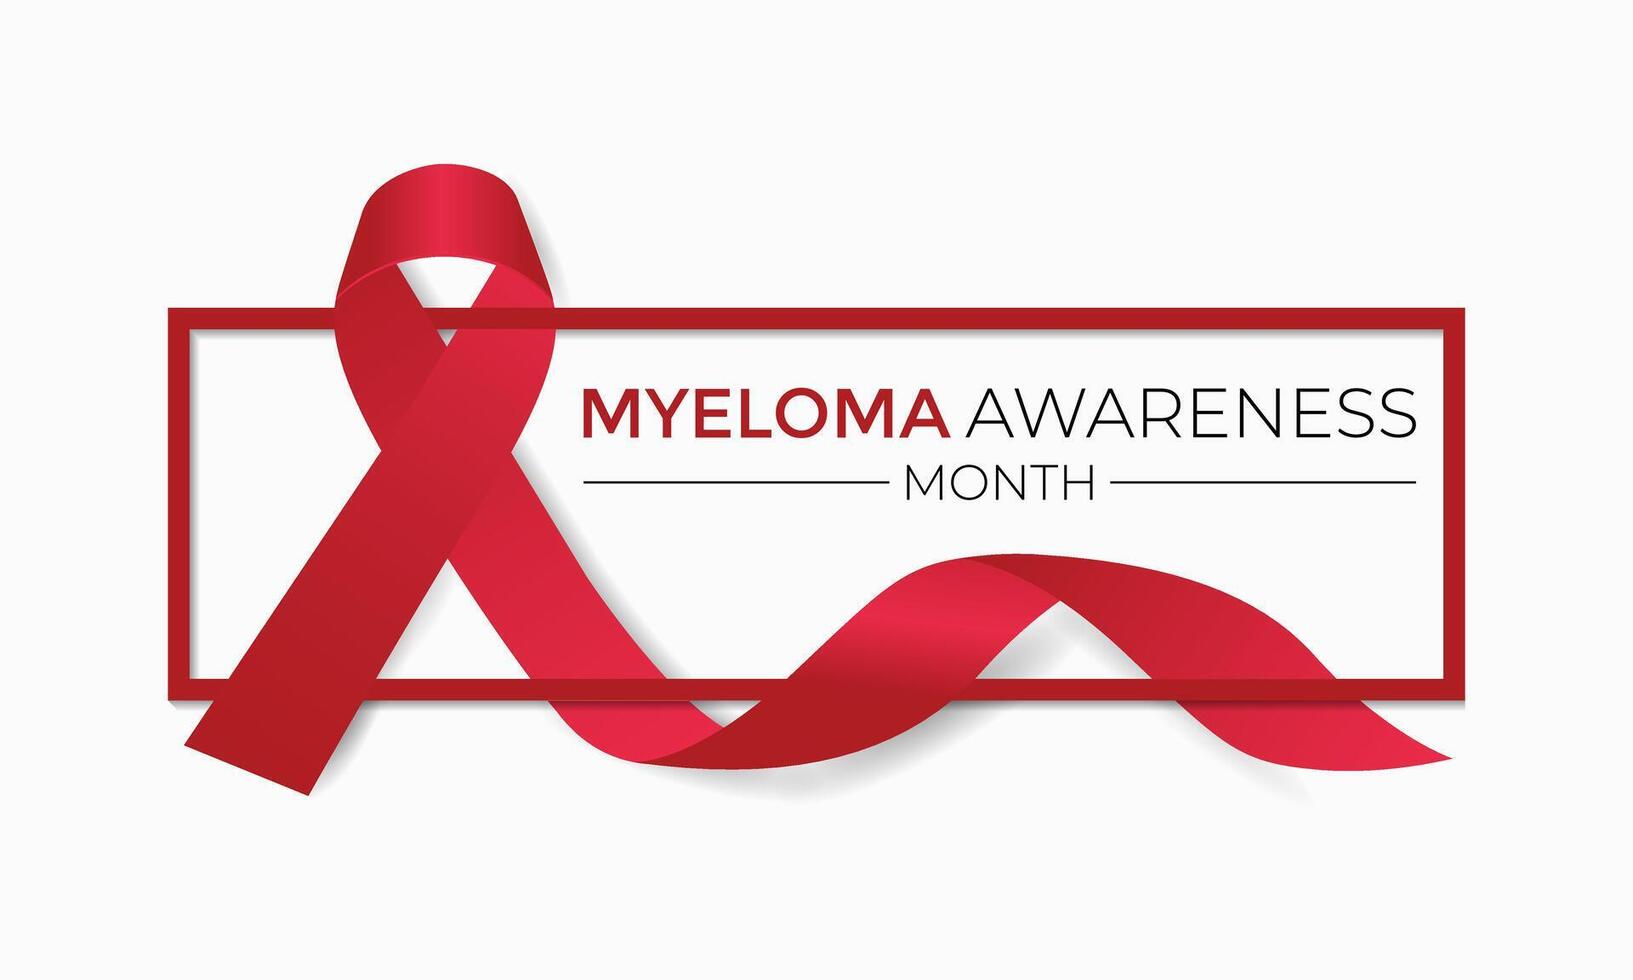 myeloom bewustzijn maand is opgemerkt elke jaar in maart. vector illustratie van achtergrond ontwerp.